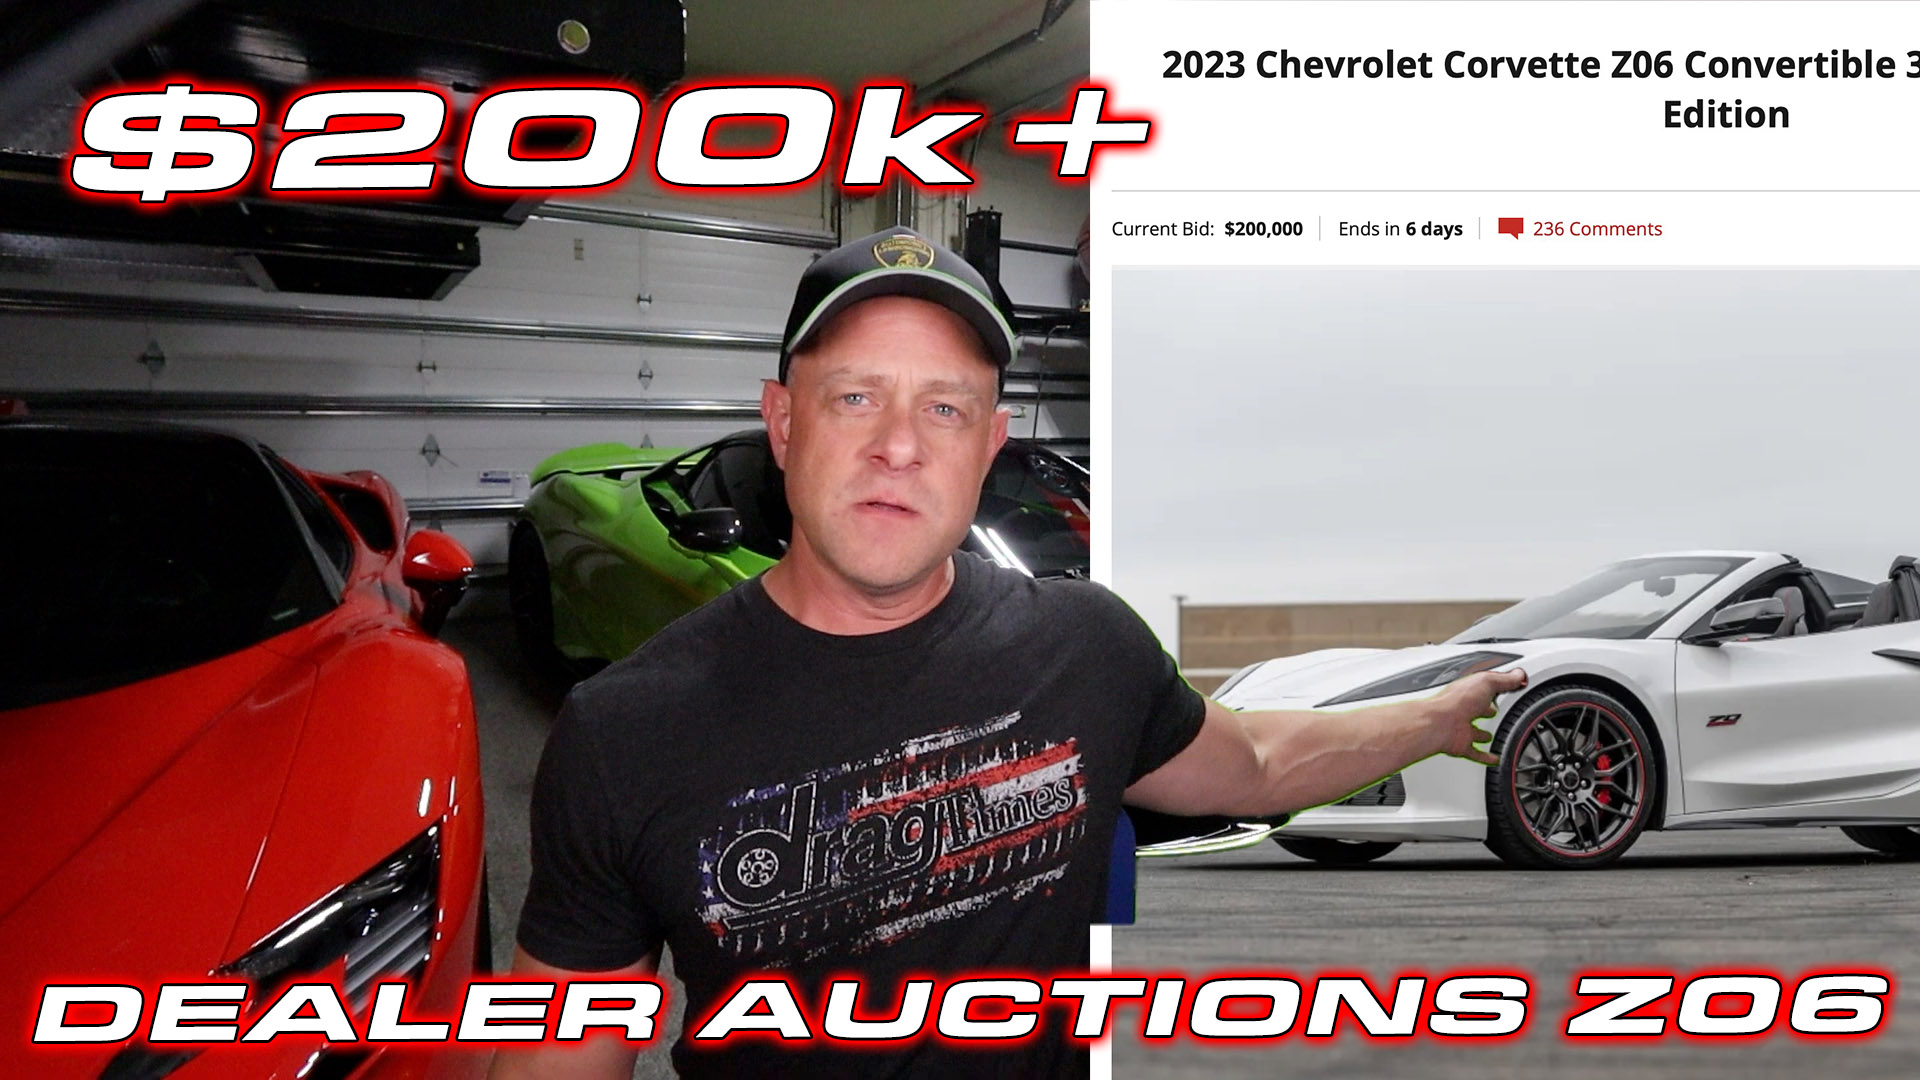 Dealer auctioning off Z06